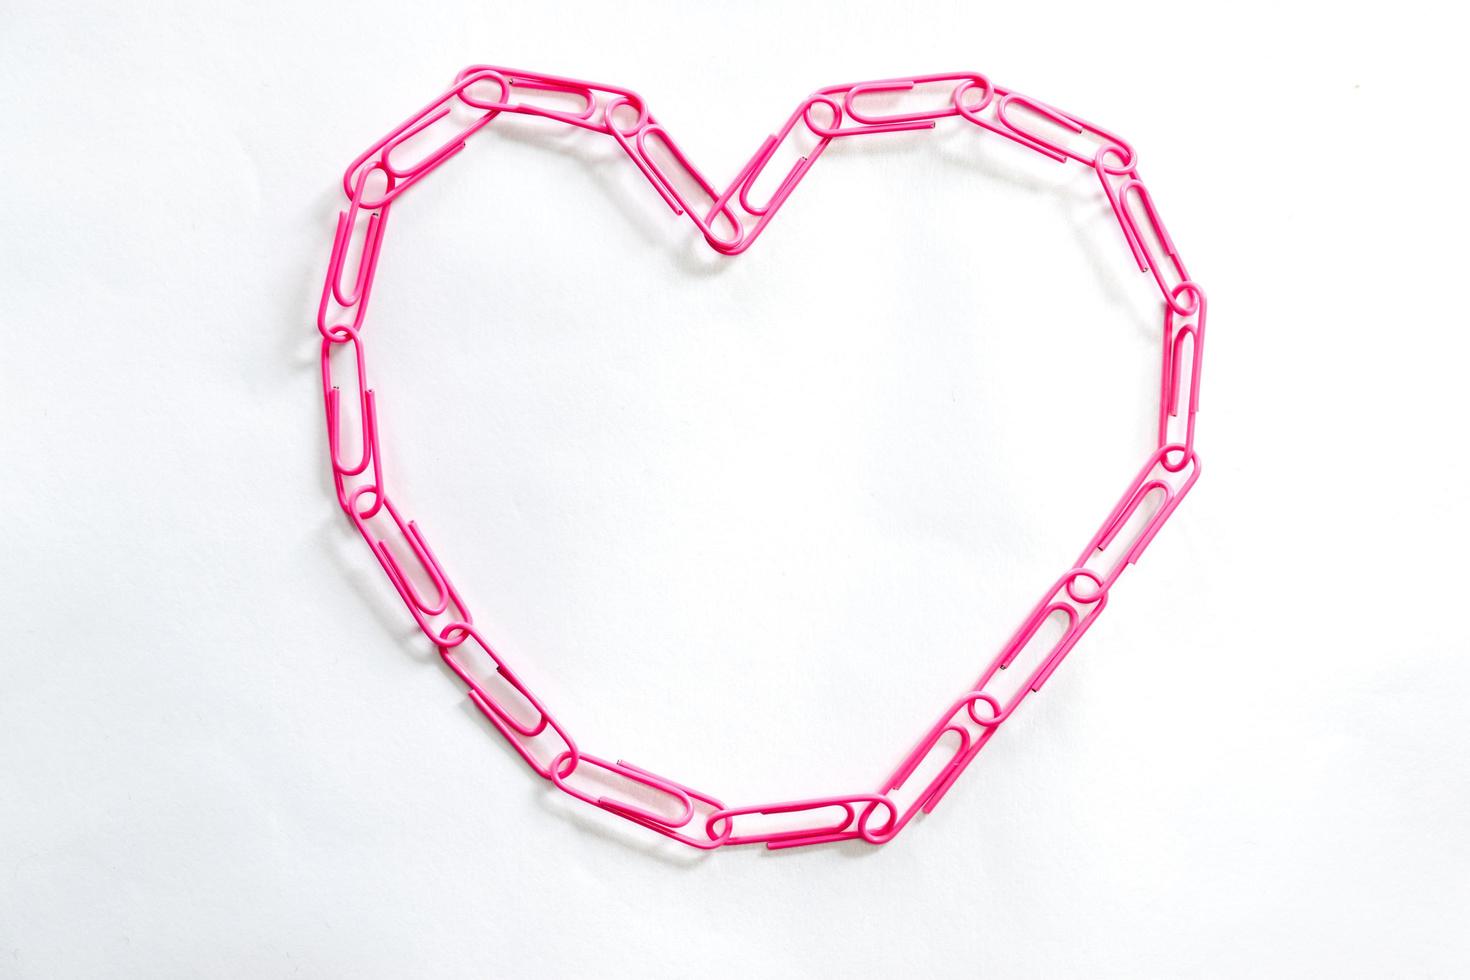 clipes de papel rosa em forma de coração em fundo branco foto